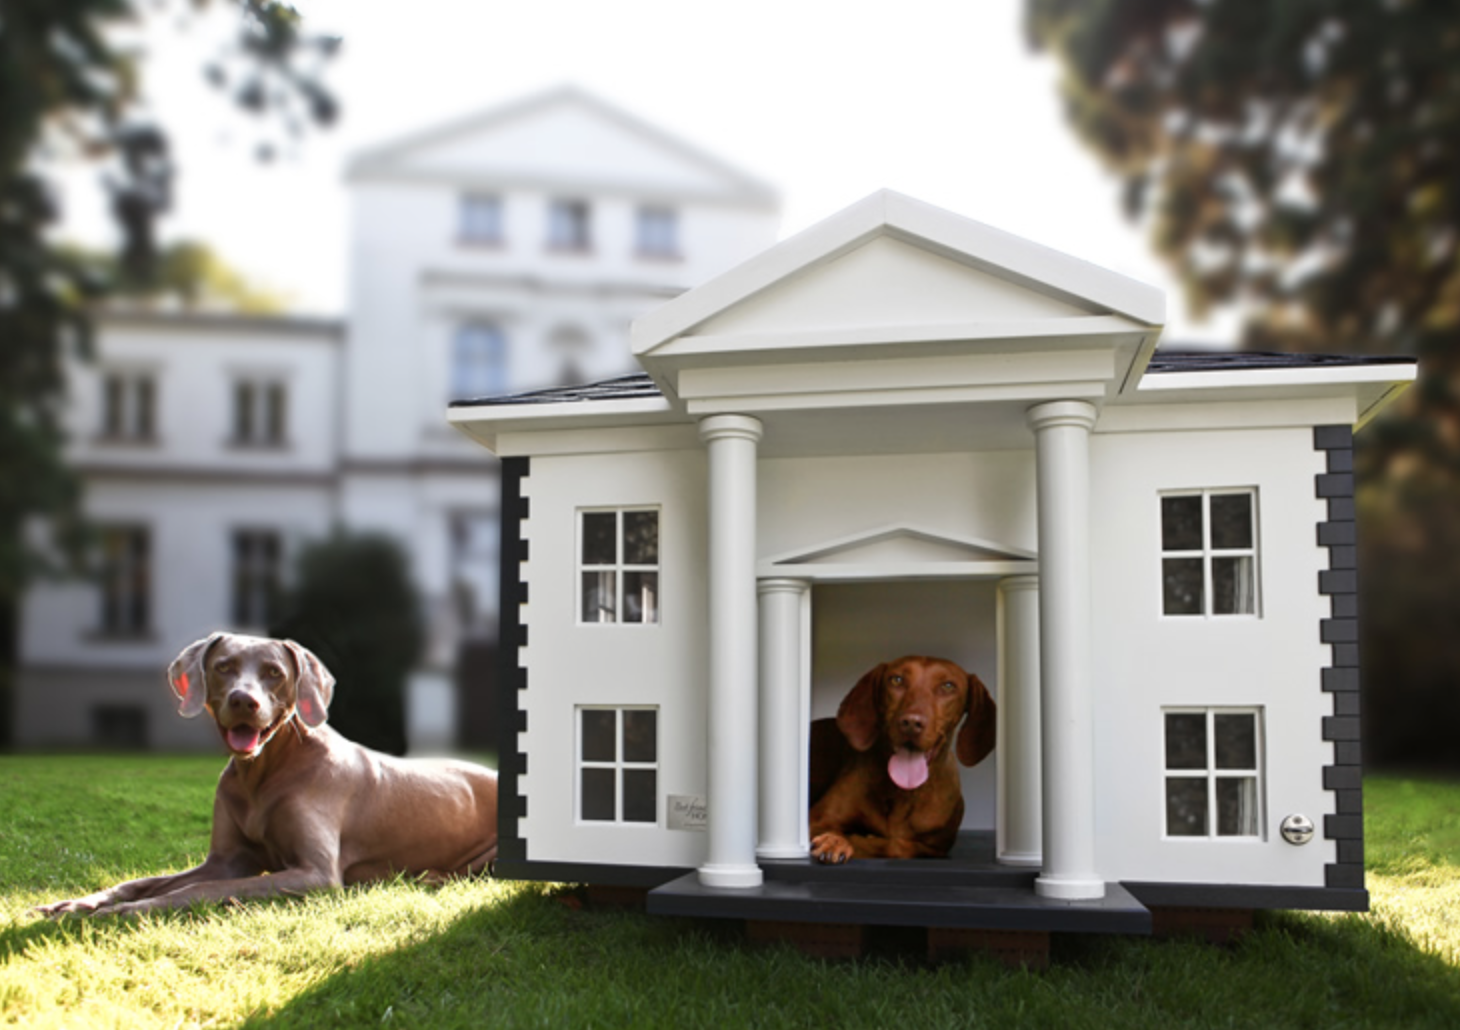 New dog house. Домик для собаки. Собака с конурой. Красивые будки для собак. Уютный домик для собаки.